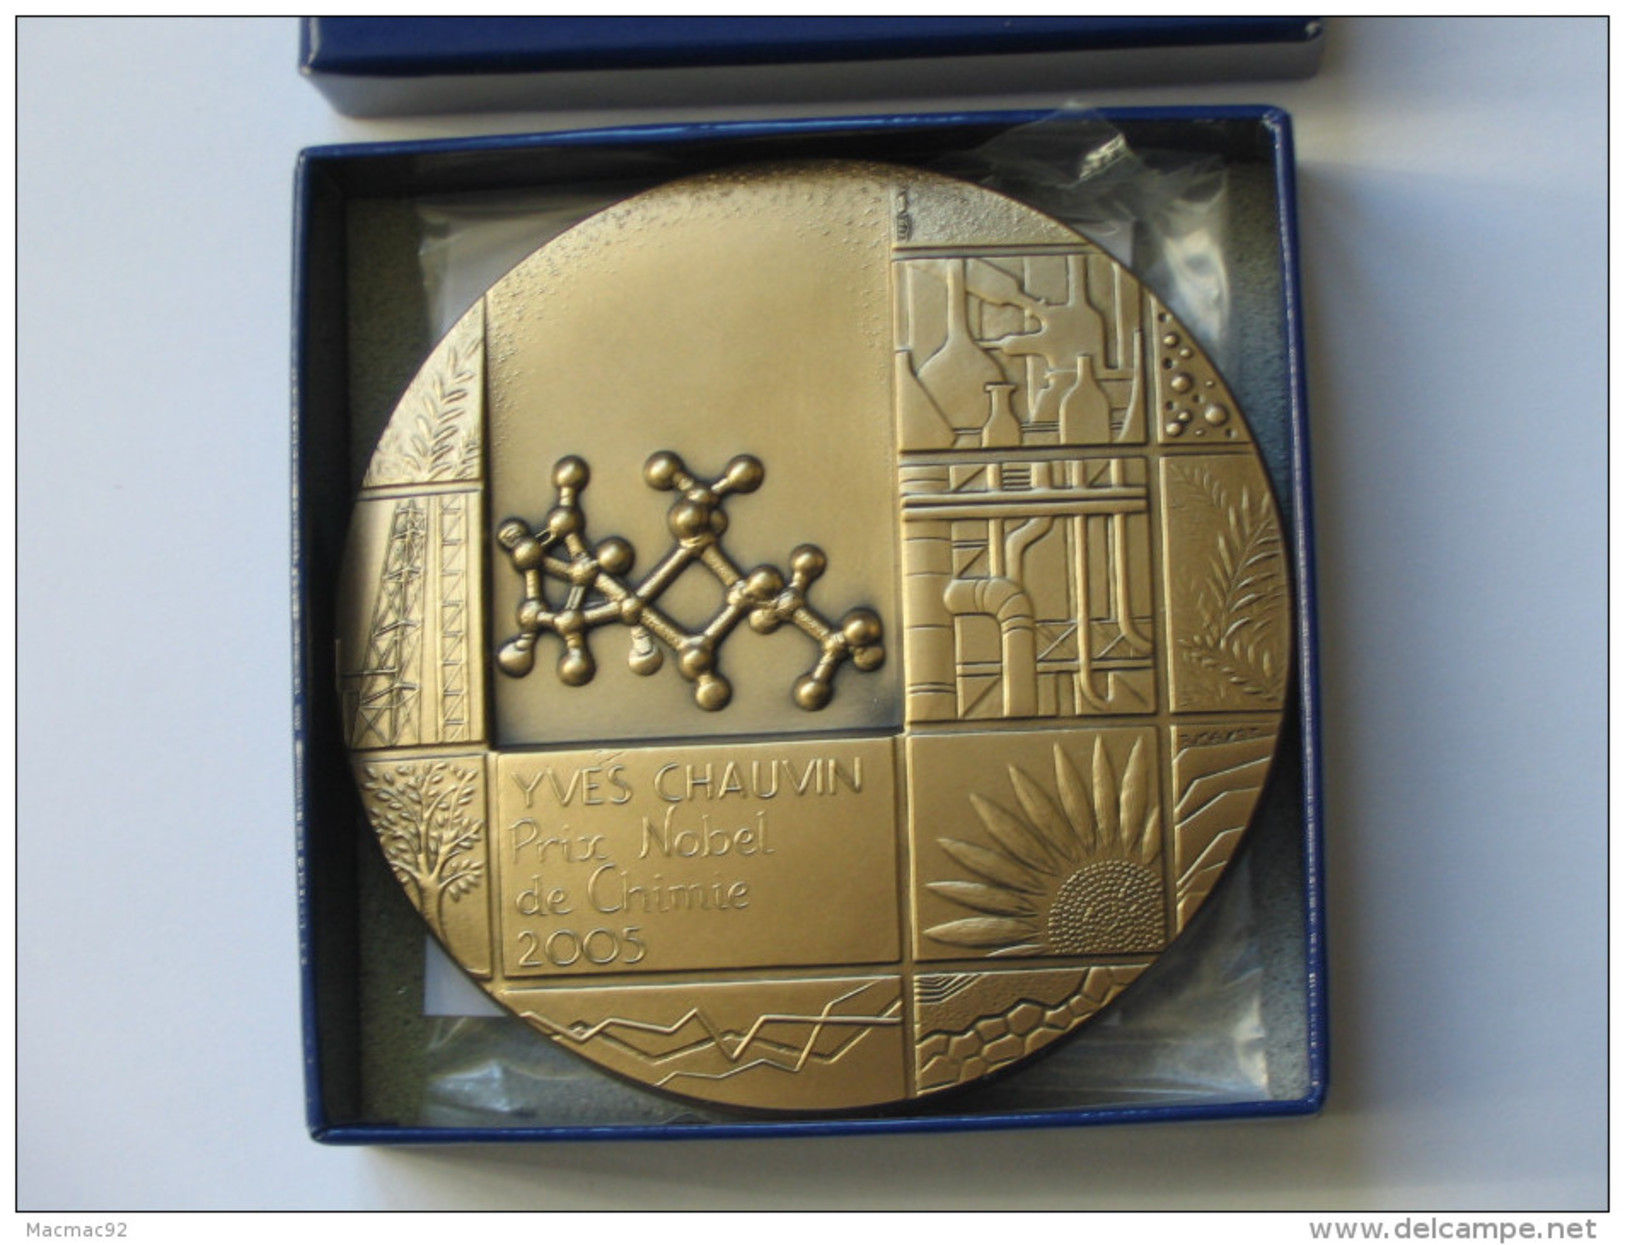 Superbe Médaille En Bronze YVES CHAUVIN  Prix Nobel De Chimie 2005 **** EN ACHAT IMMEDIAT **** - Professionnels / De Société